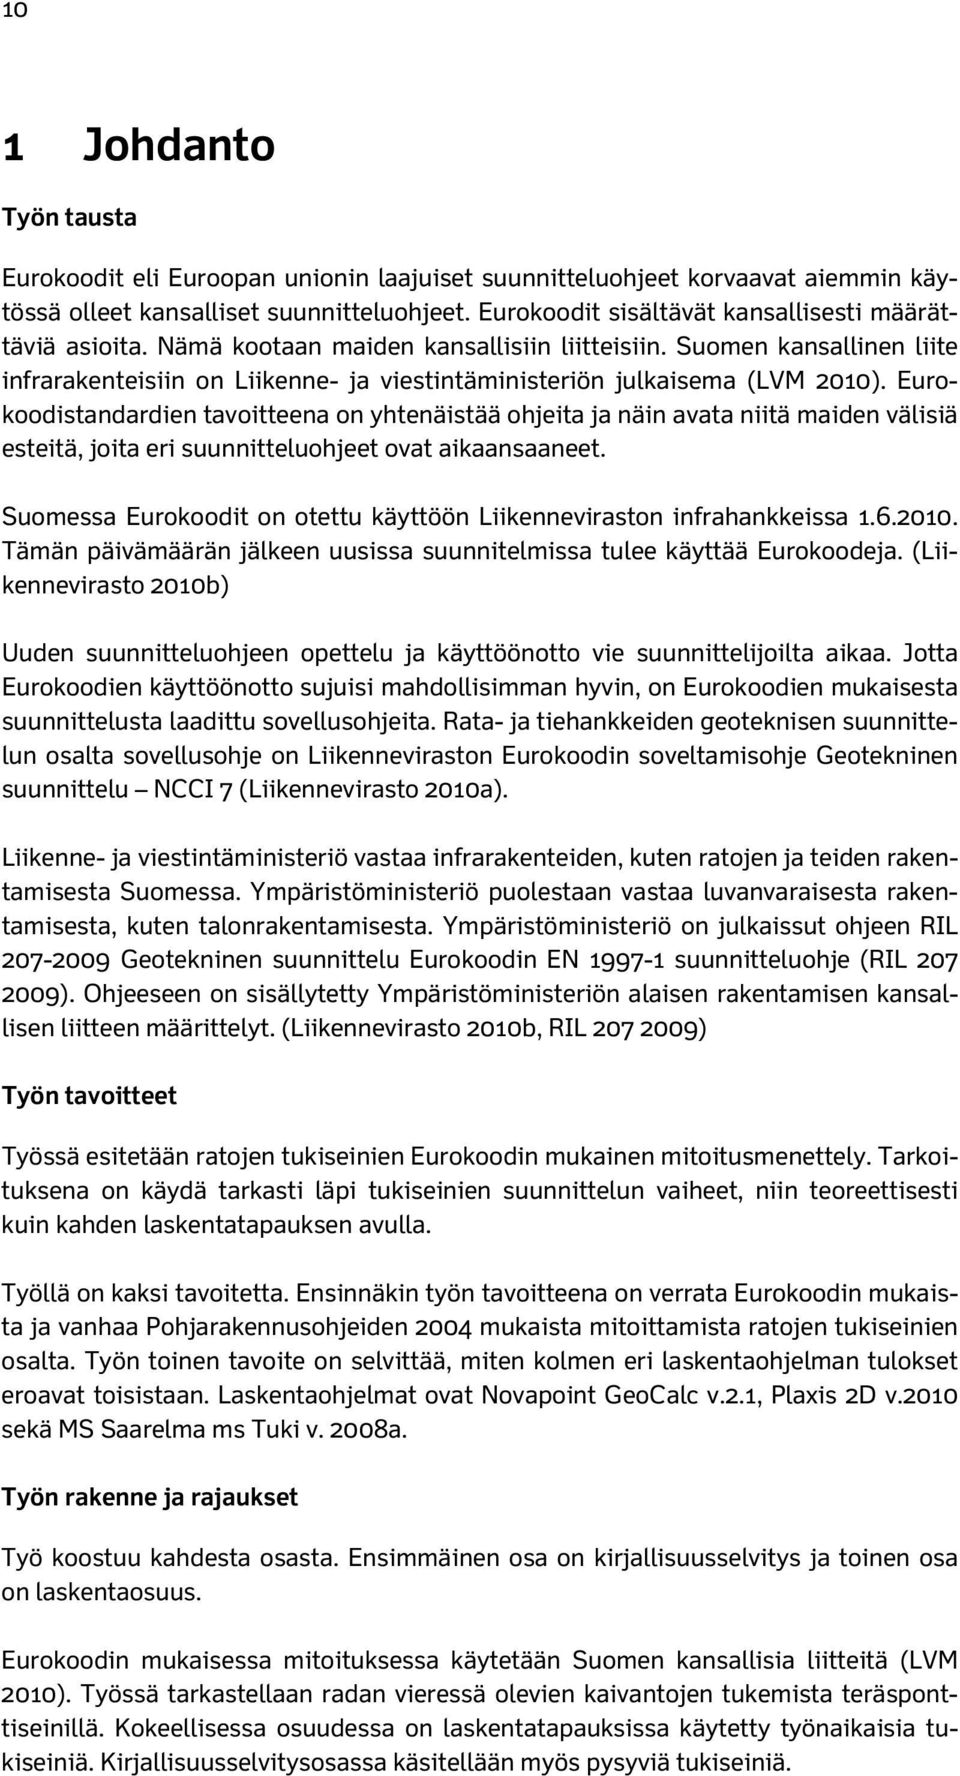 Suomen kansallinen liite infrarakenteisiin on Liikenne- ja viestintäministeriön julkaisema (LVM 2010).